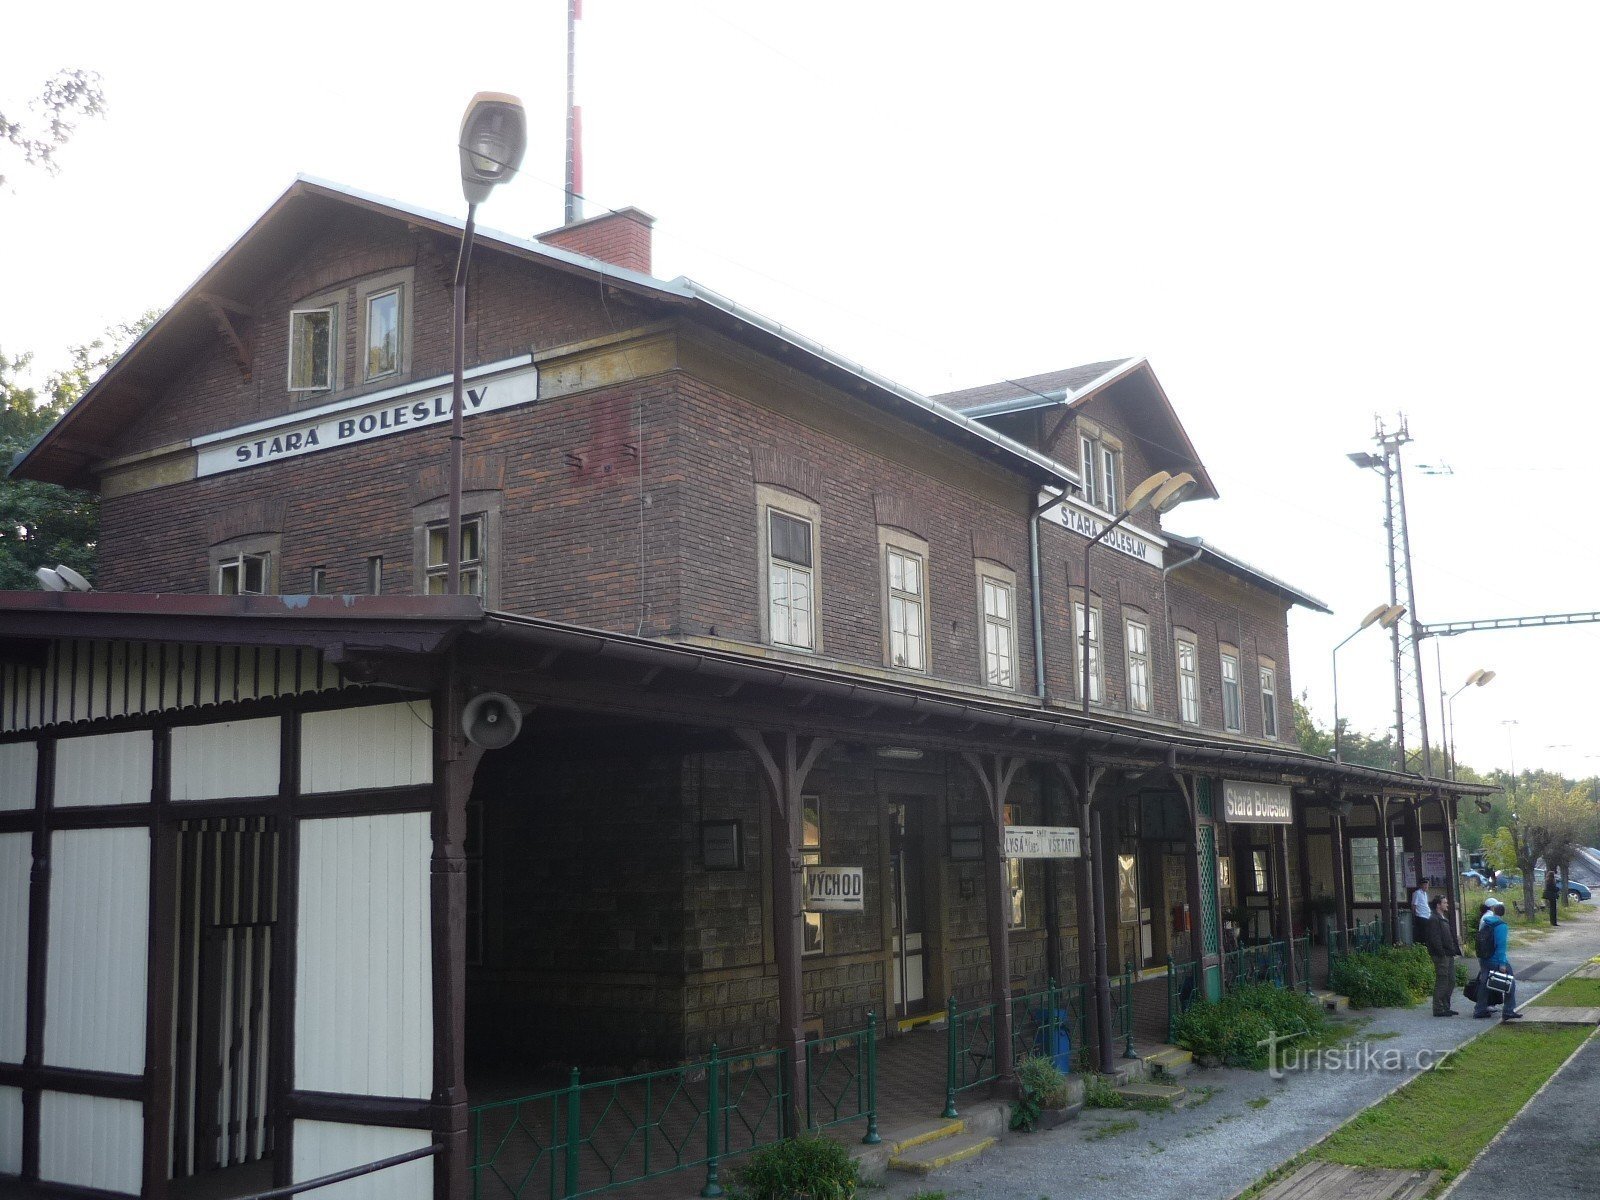 Dworzec w Starej Boleslav